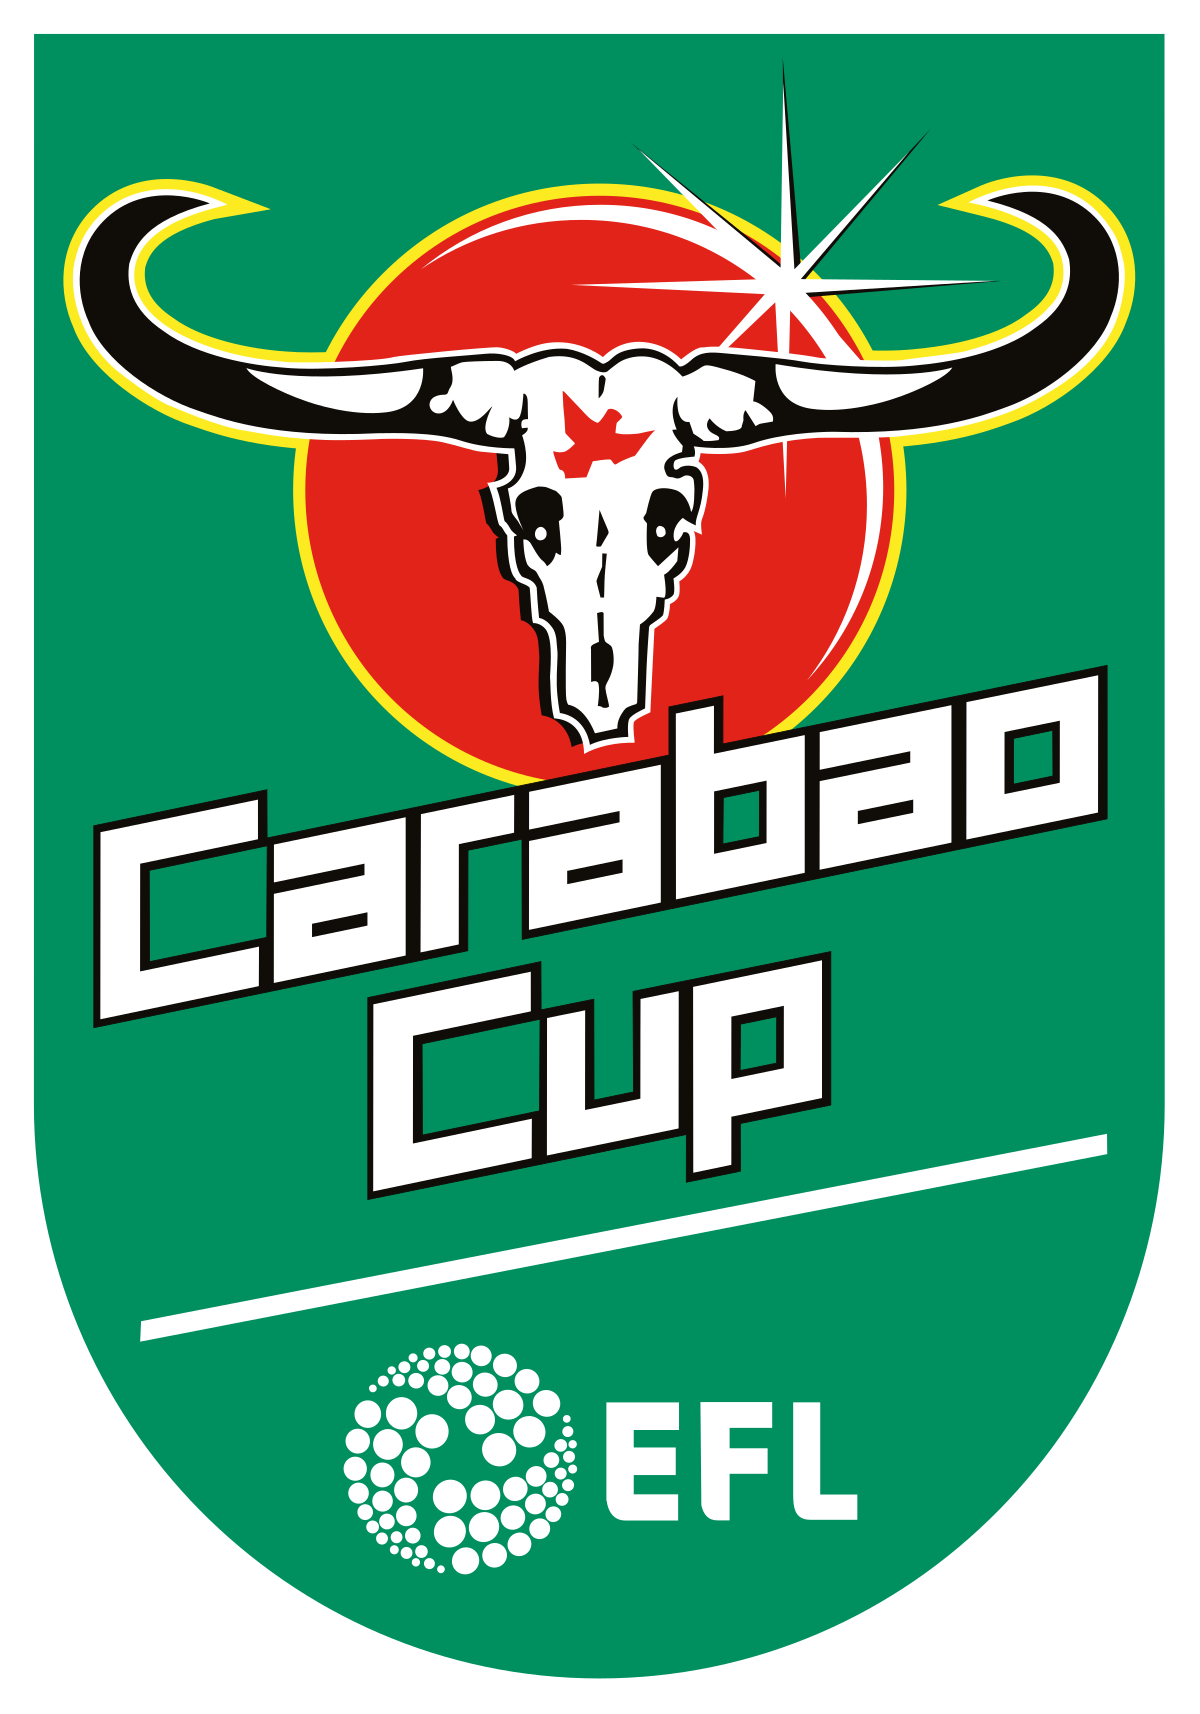 Hasil gambar untuk logo carabao cup png